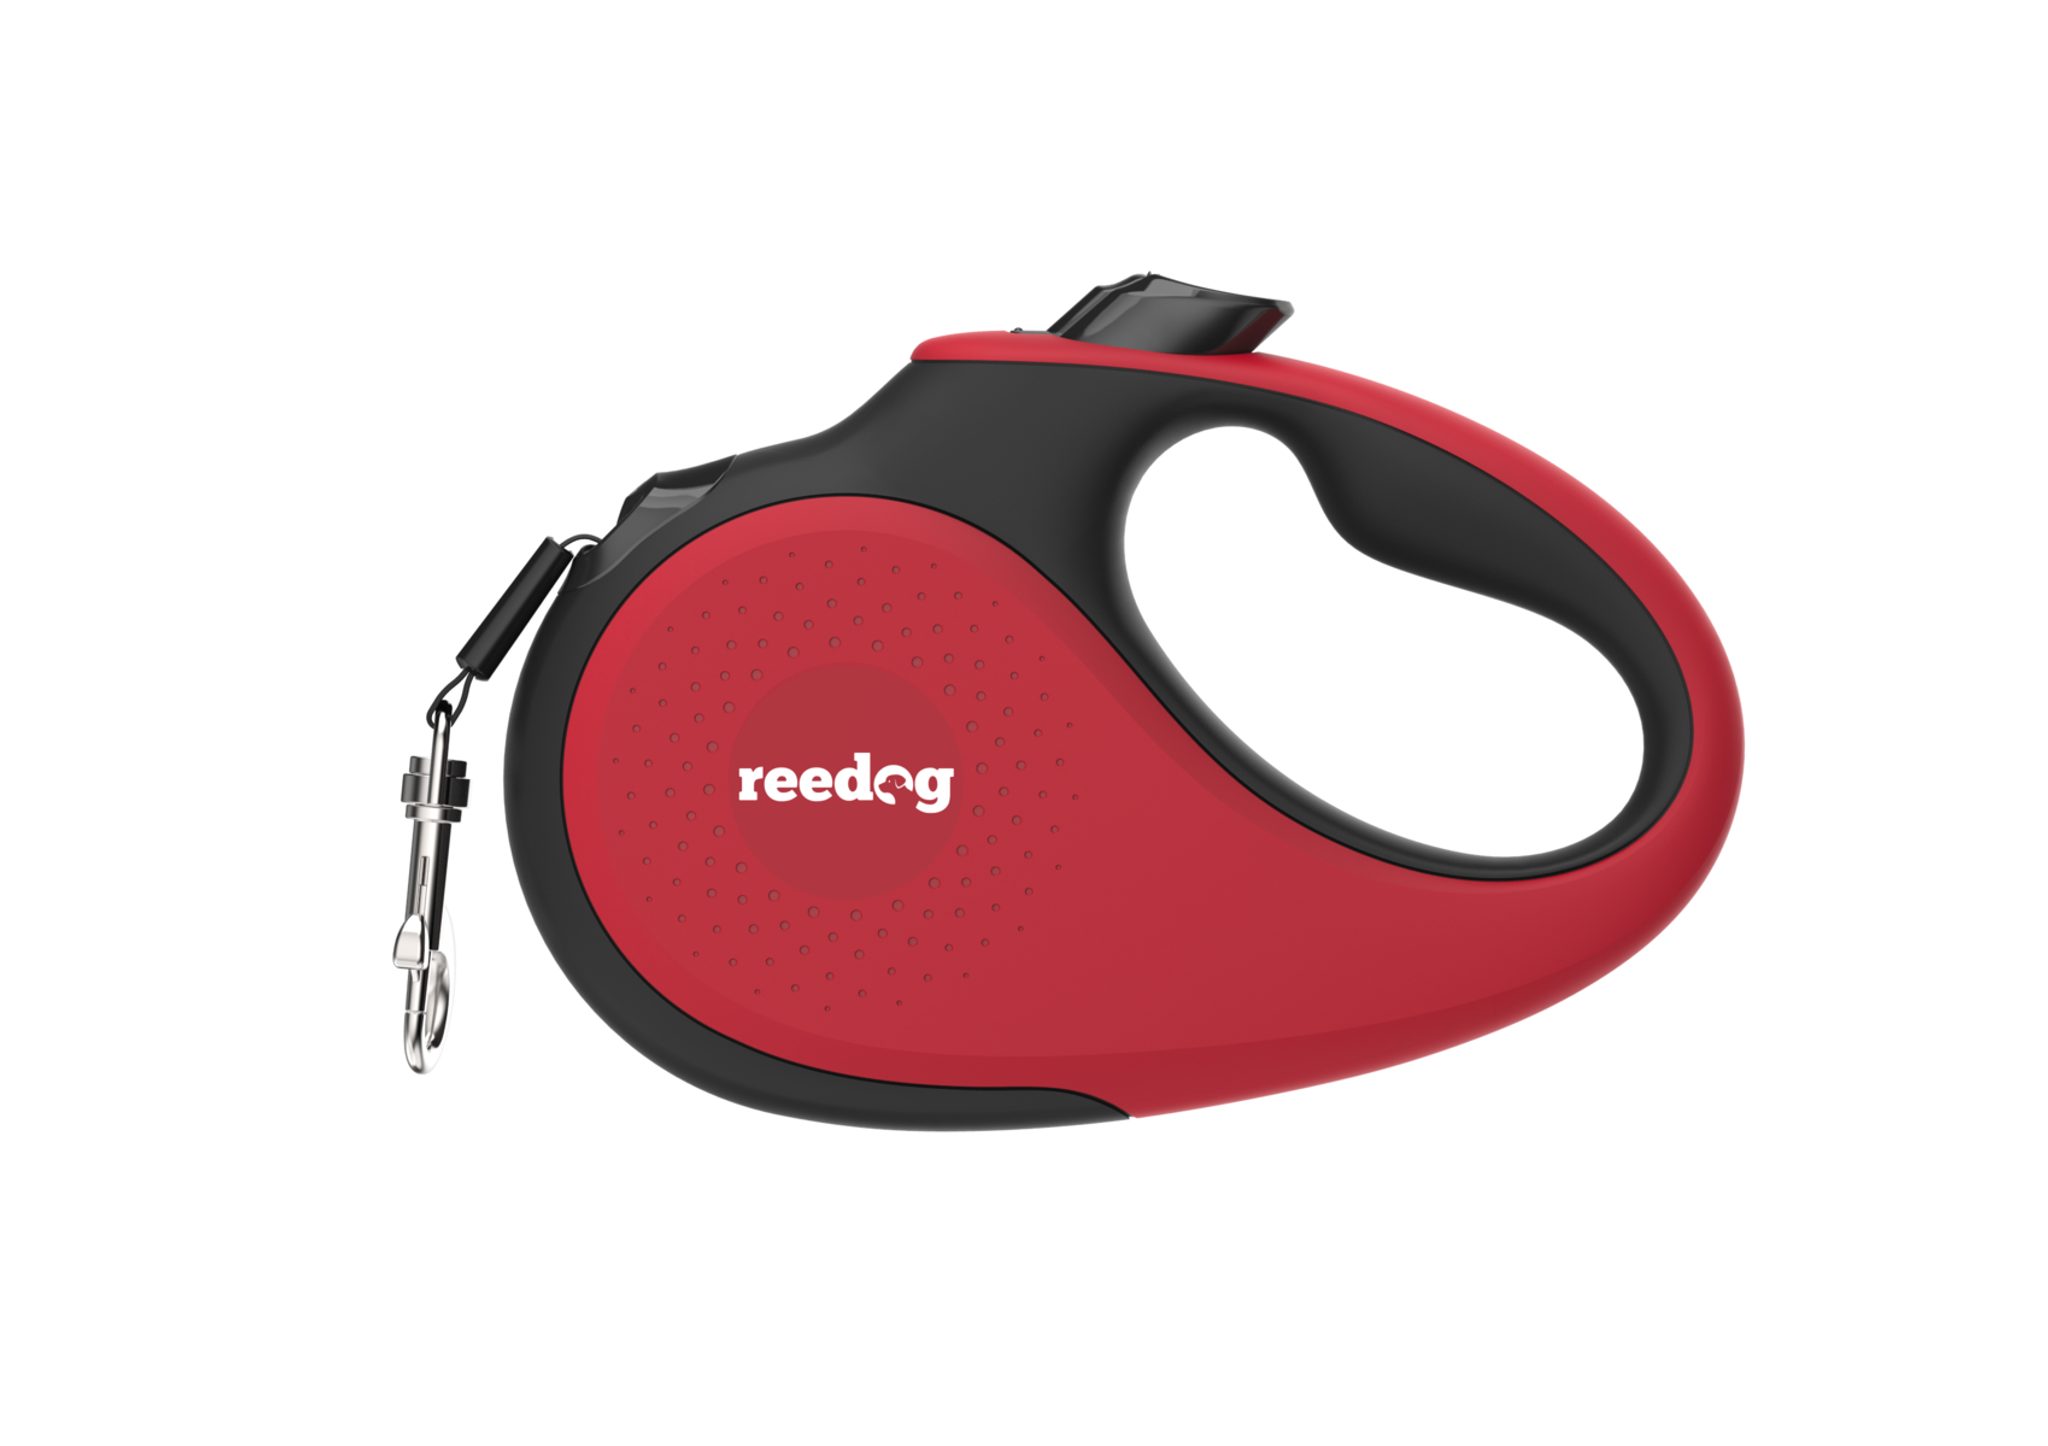 Reedog Senza Premium samonavíjecí vodítko L 50kg / 5m páska / červené